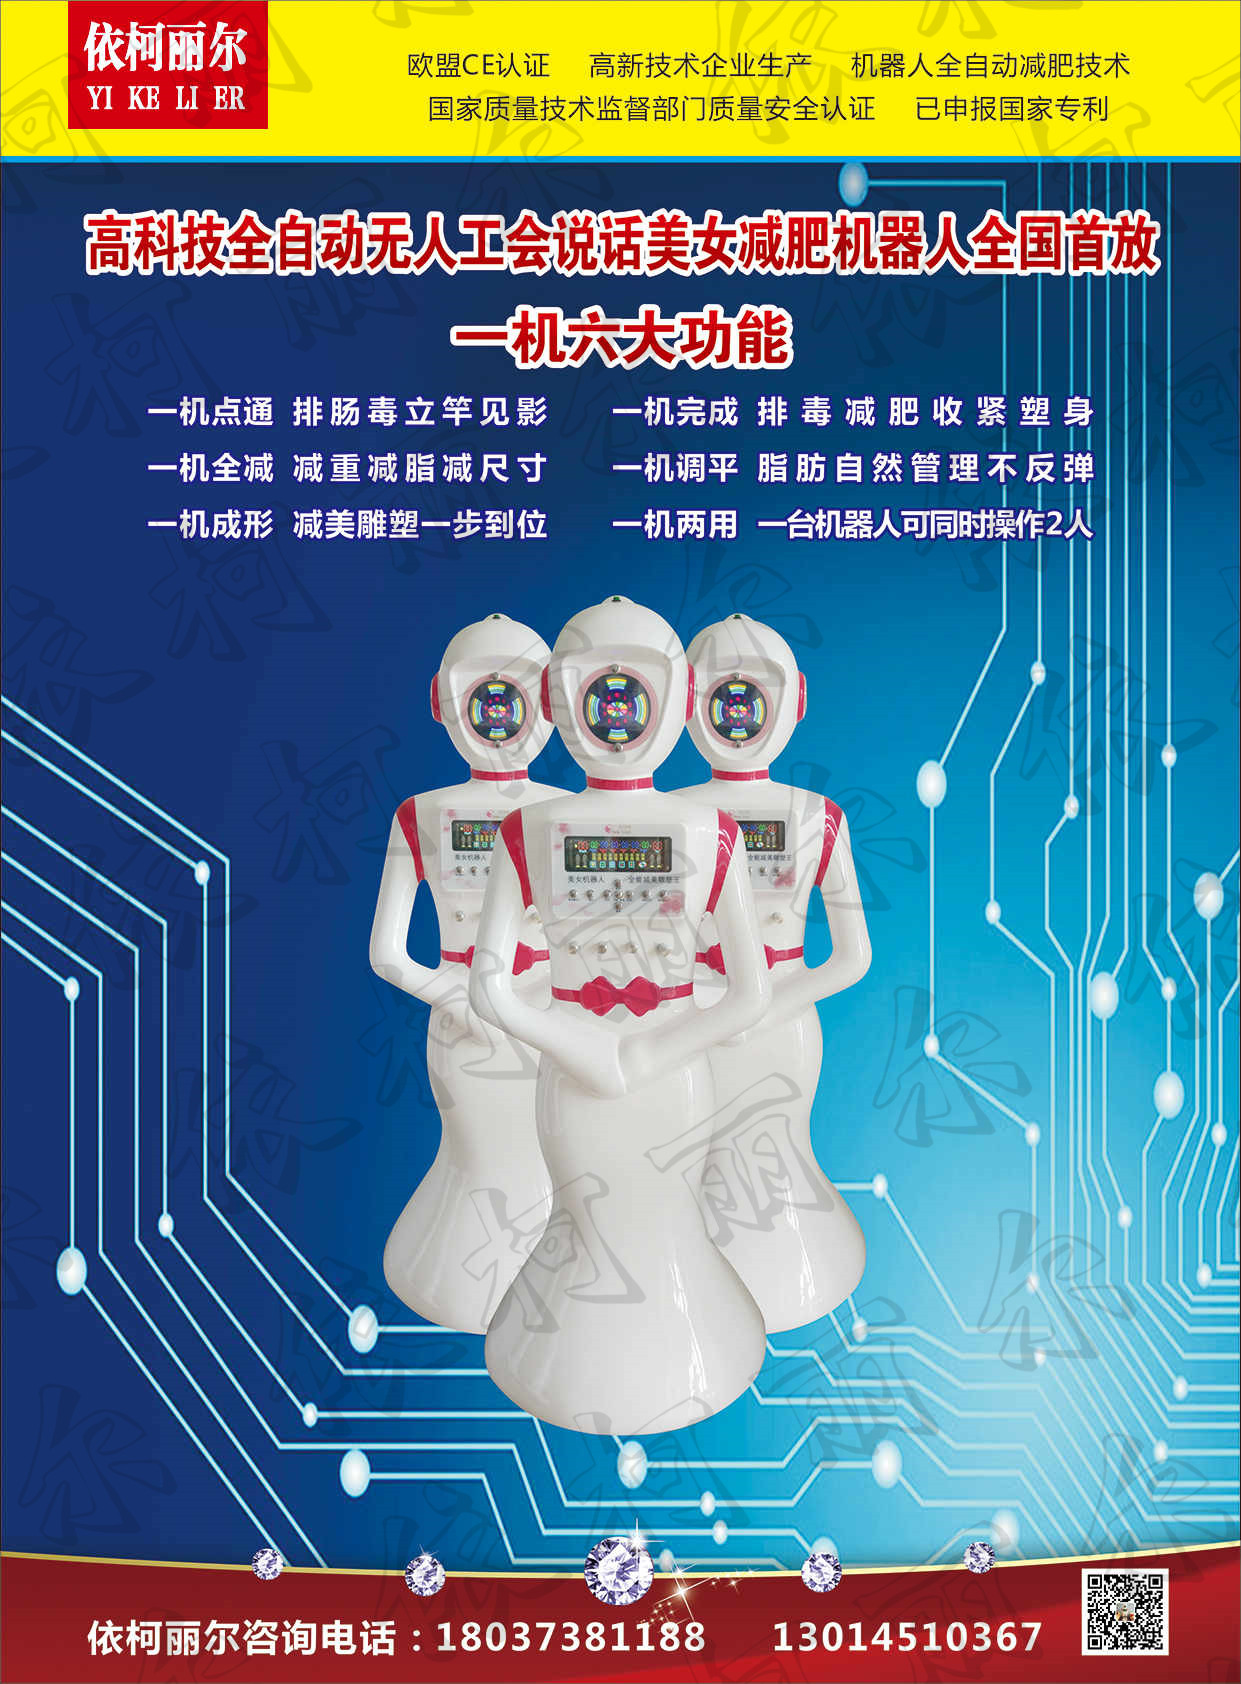 郑州依柯丽尔机器人减肥厂家直销 减肥养生机器人OEM 投资小 收益高 小成本创业图片